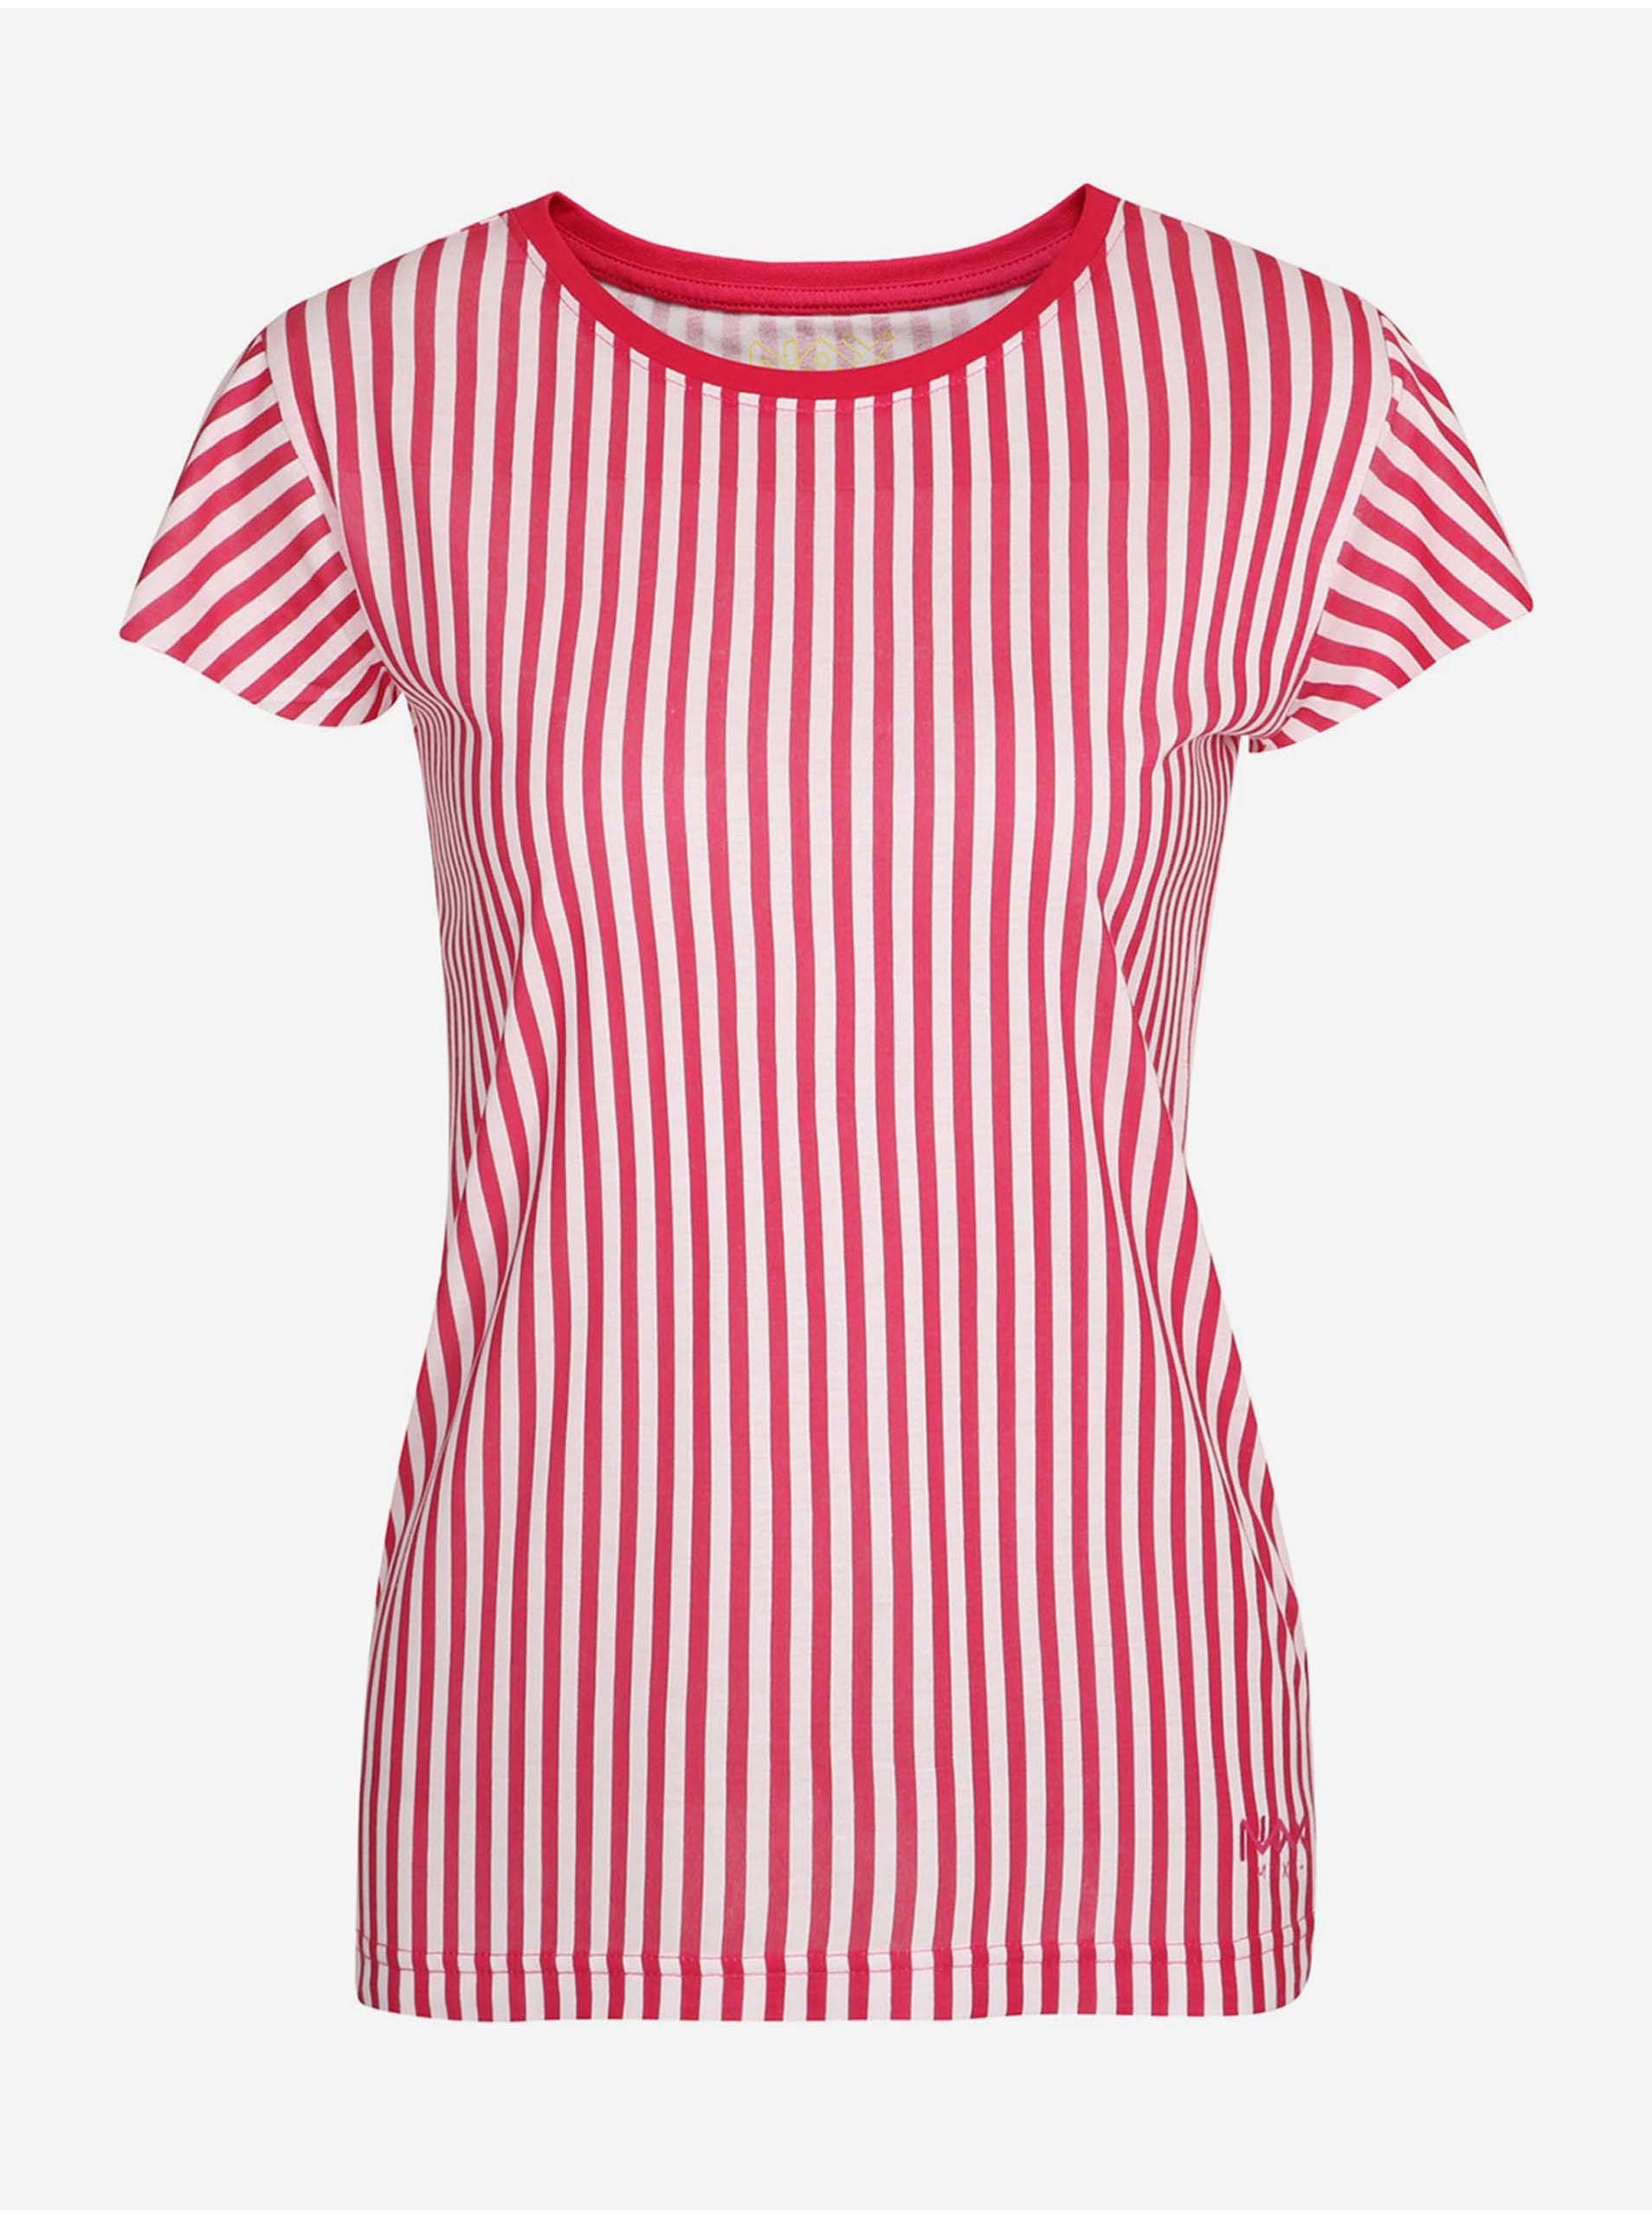 E-shop Bielo-červené dámske pruhované tričko NAX HUDERA